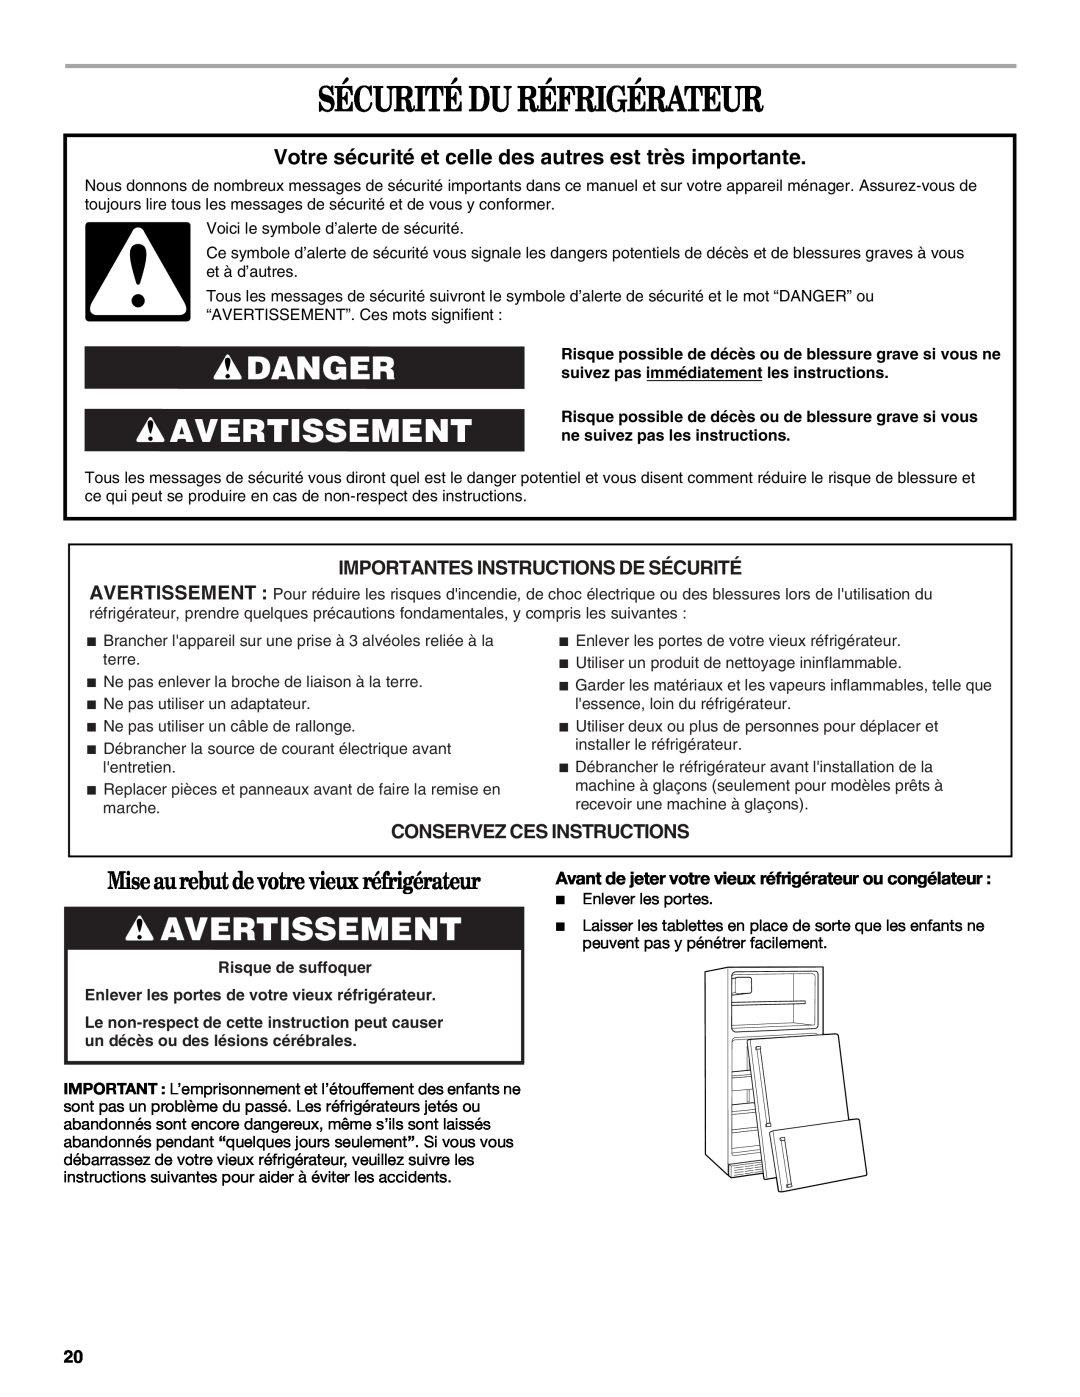 Amana W10162526A manual Sécurité Du Réfrigérateur, Danger Avertissement, Importantes Instructions De Sécurité 